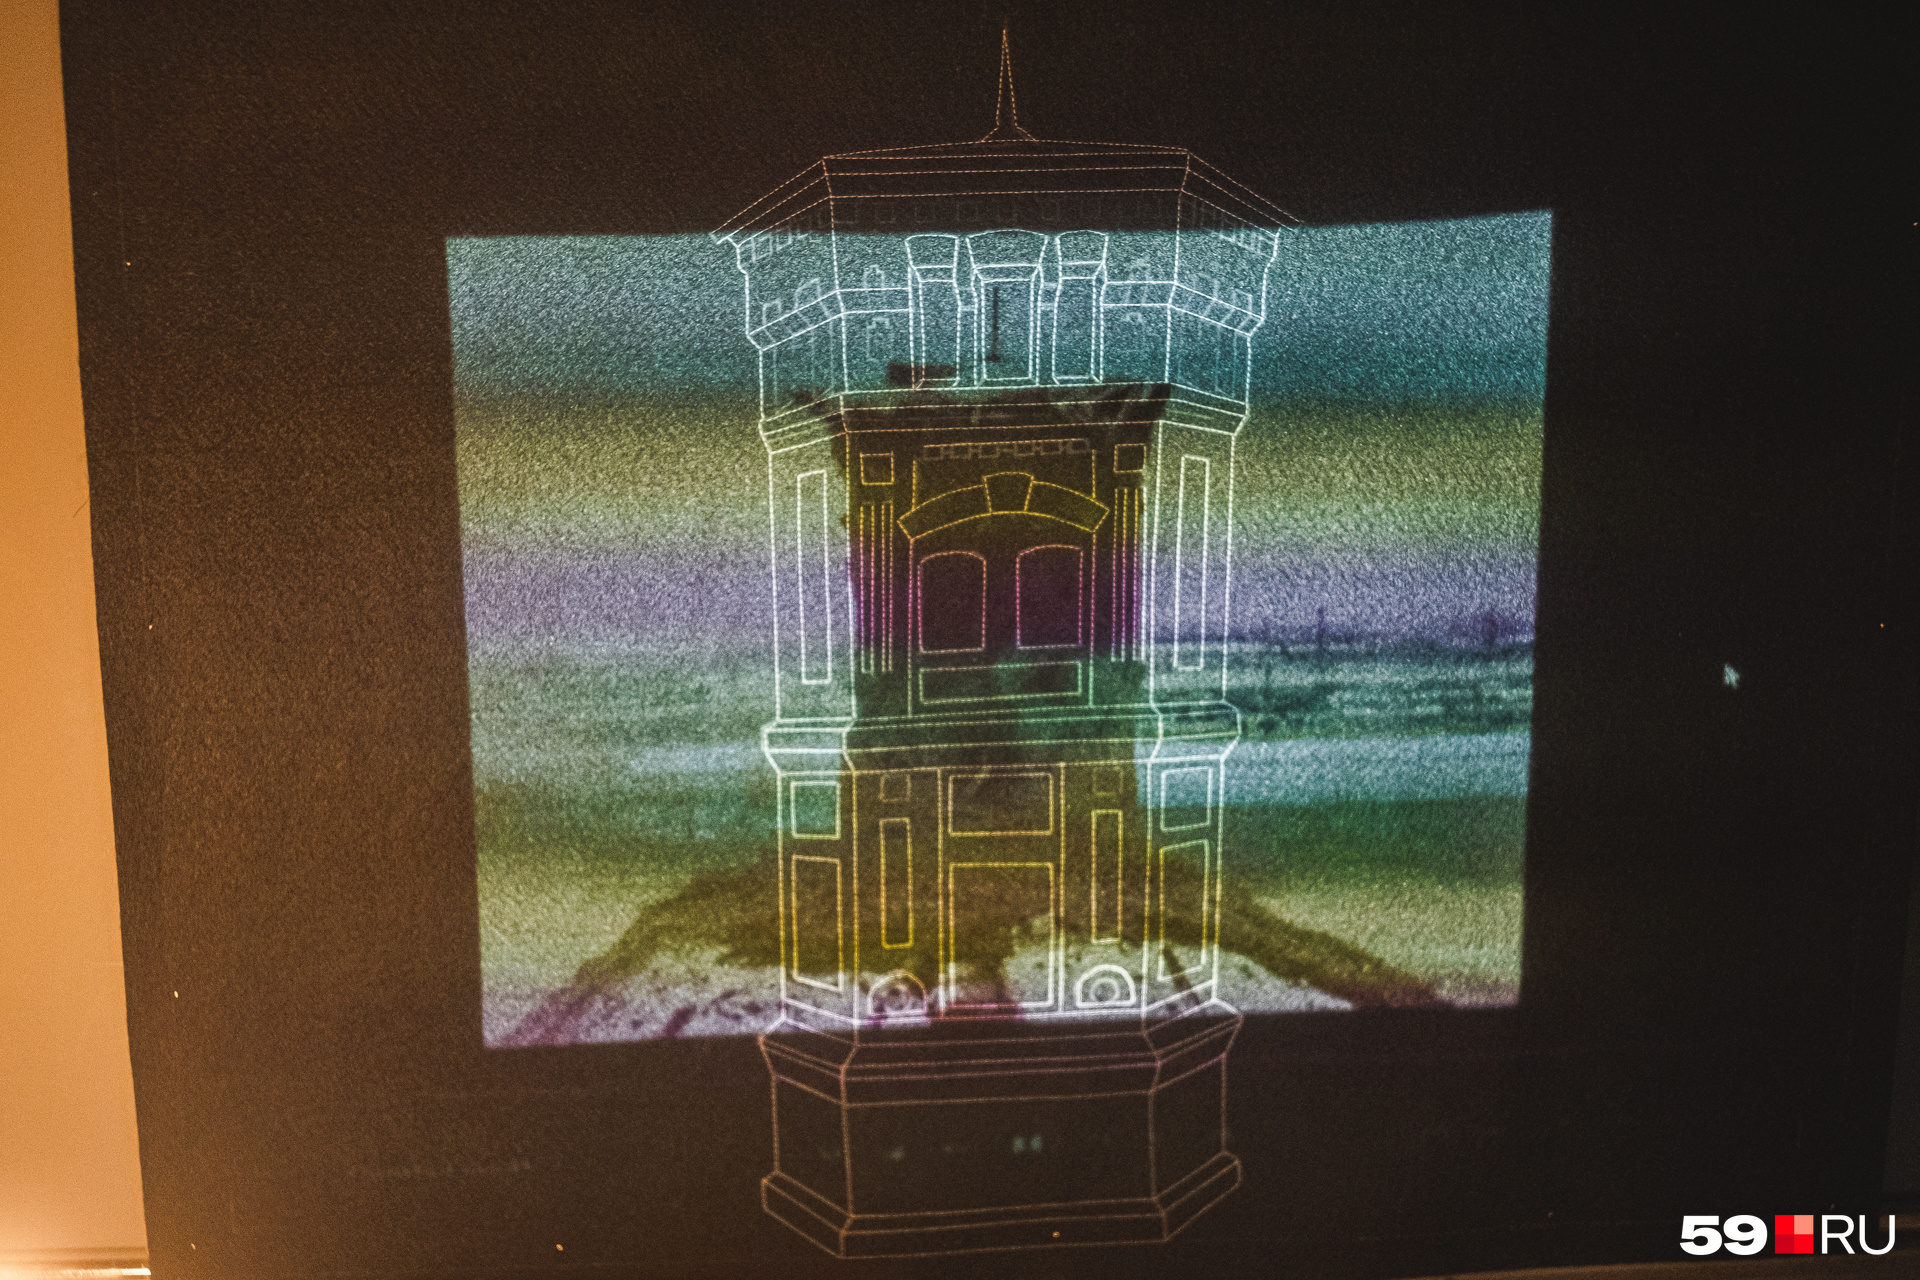 На проекции видно водонапорную башню на Барамзиной, которую <a href="https://59.ru/text/gorod/2022/11/27/71849300/" class="io-leave-page _" target="_blank">разрушили год назад</a>. Одна из работ художника